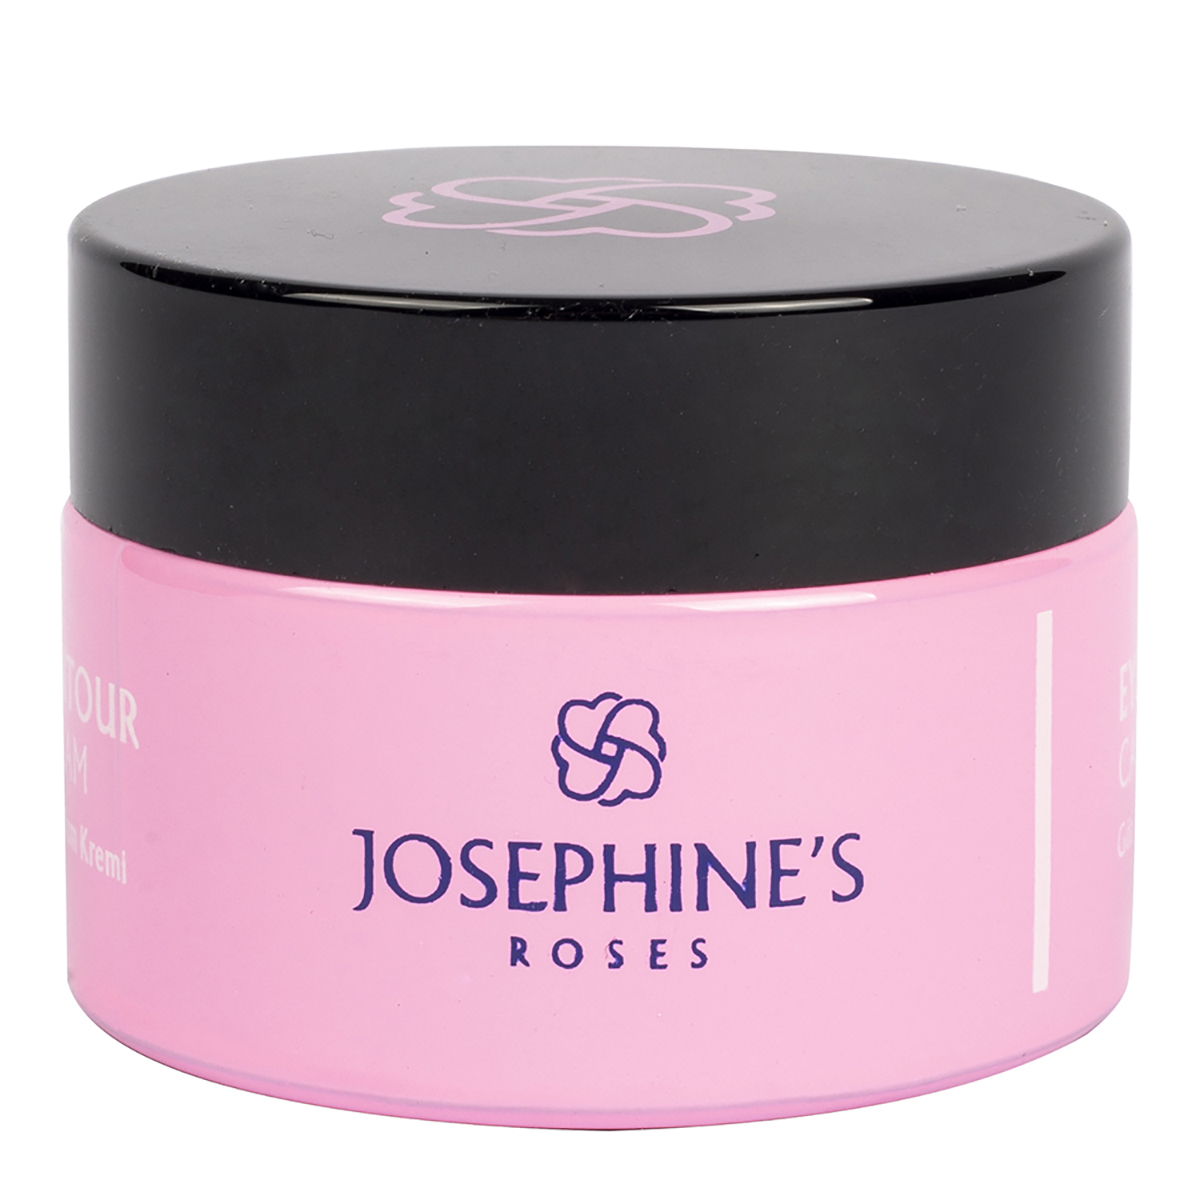 Josephine’s roses eye contour care cream